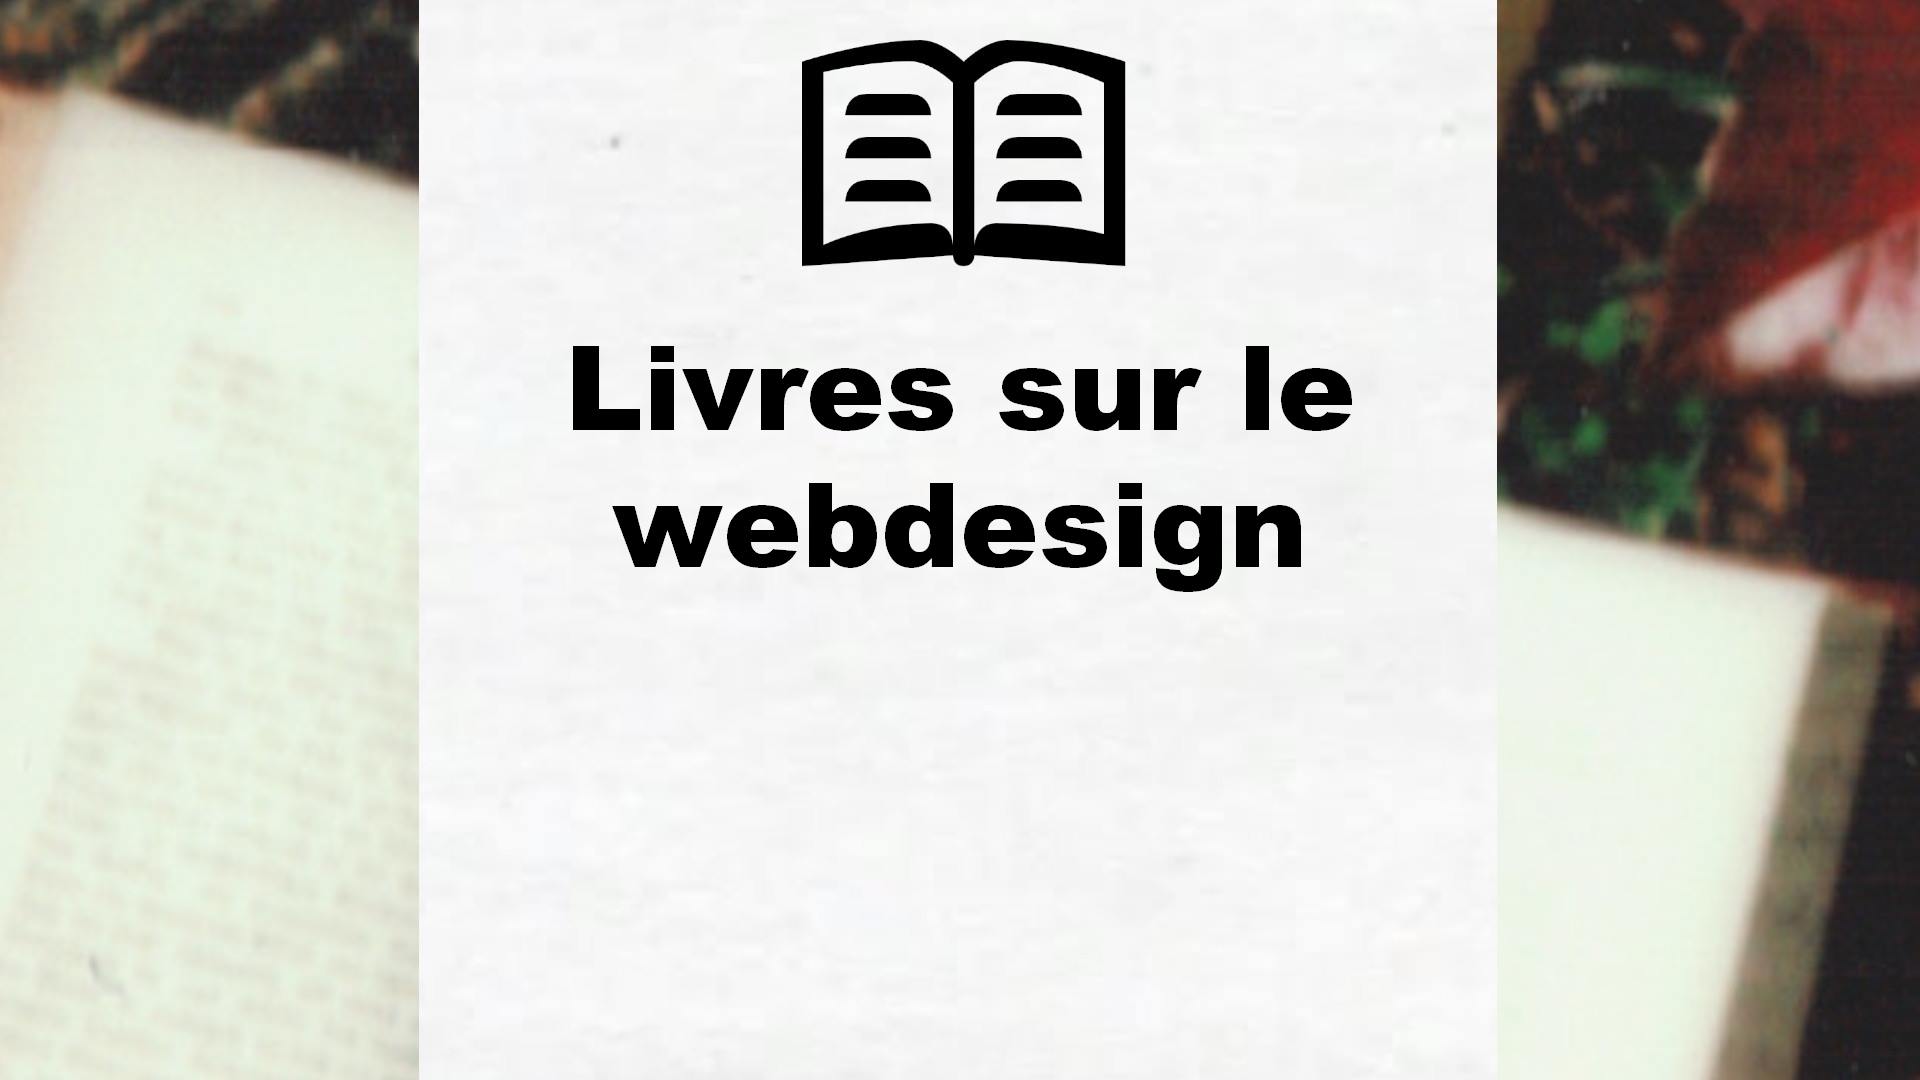 Livres sur le webdesign